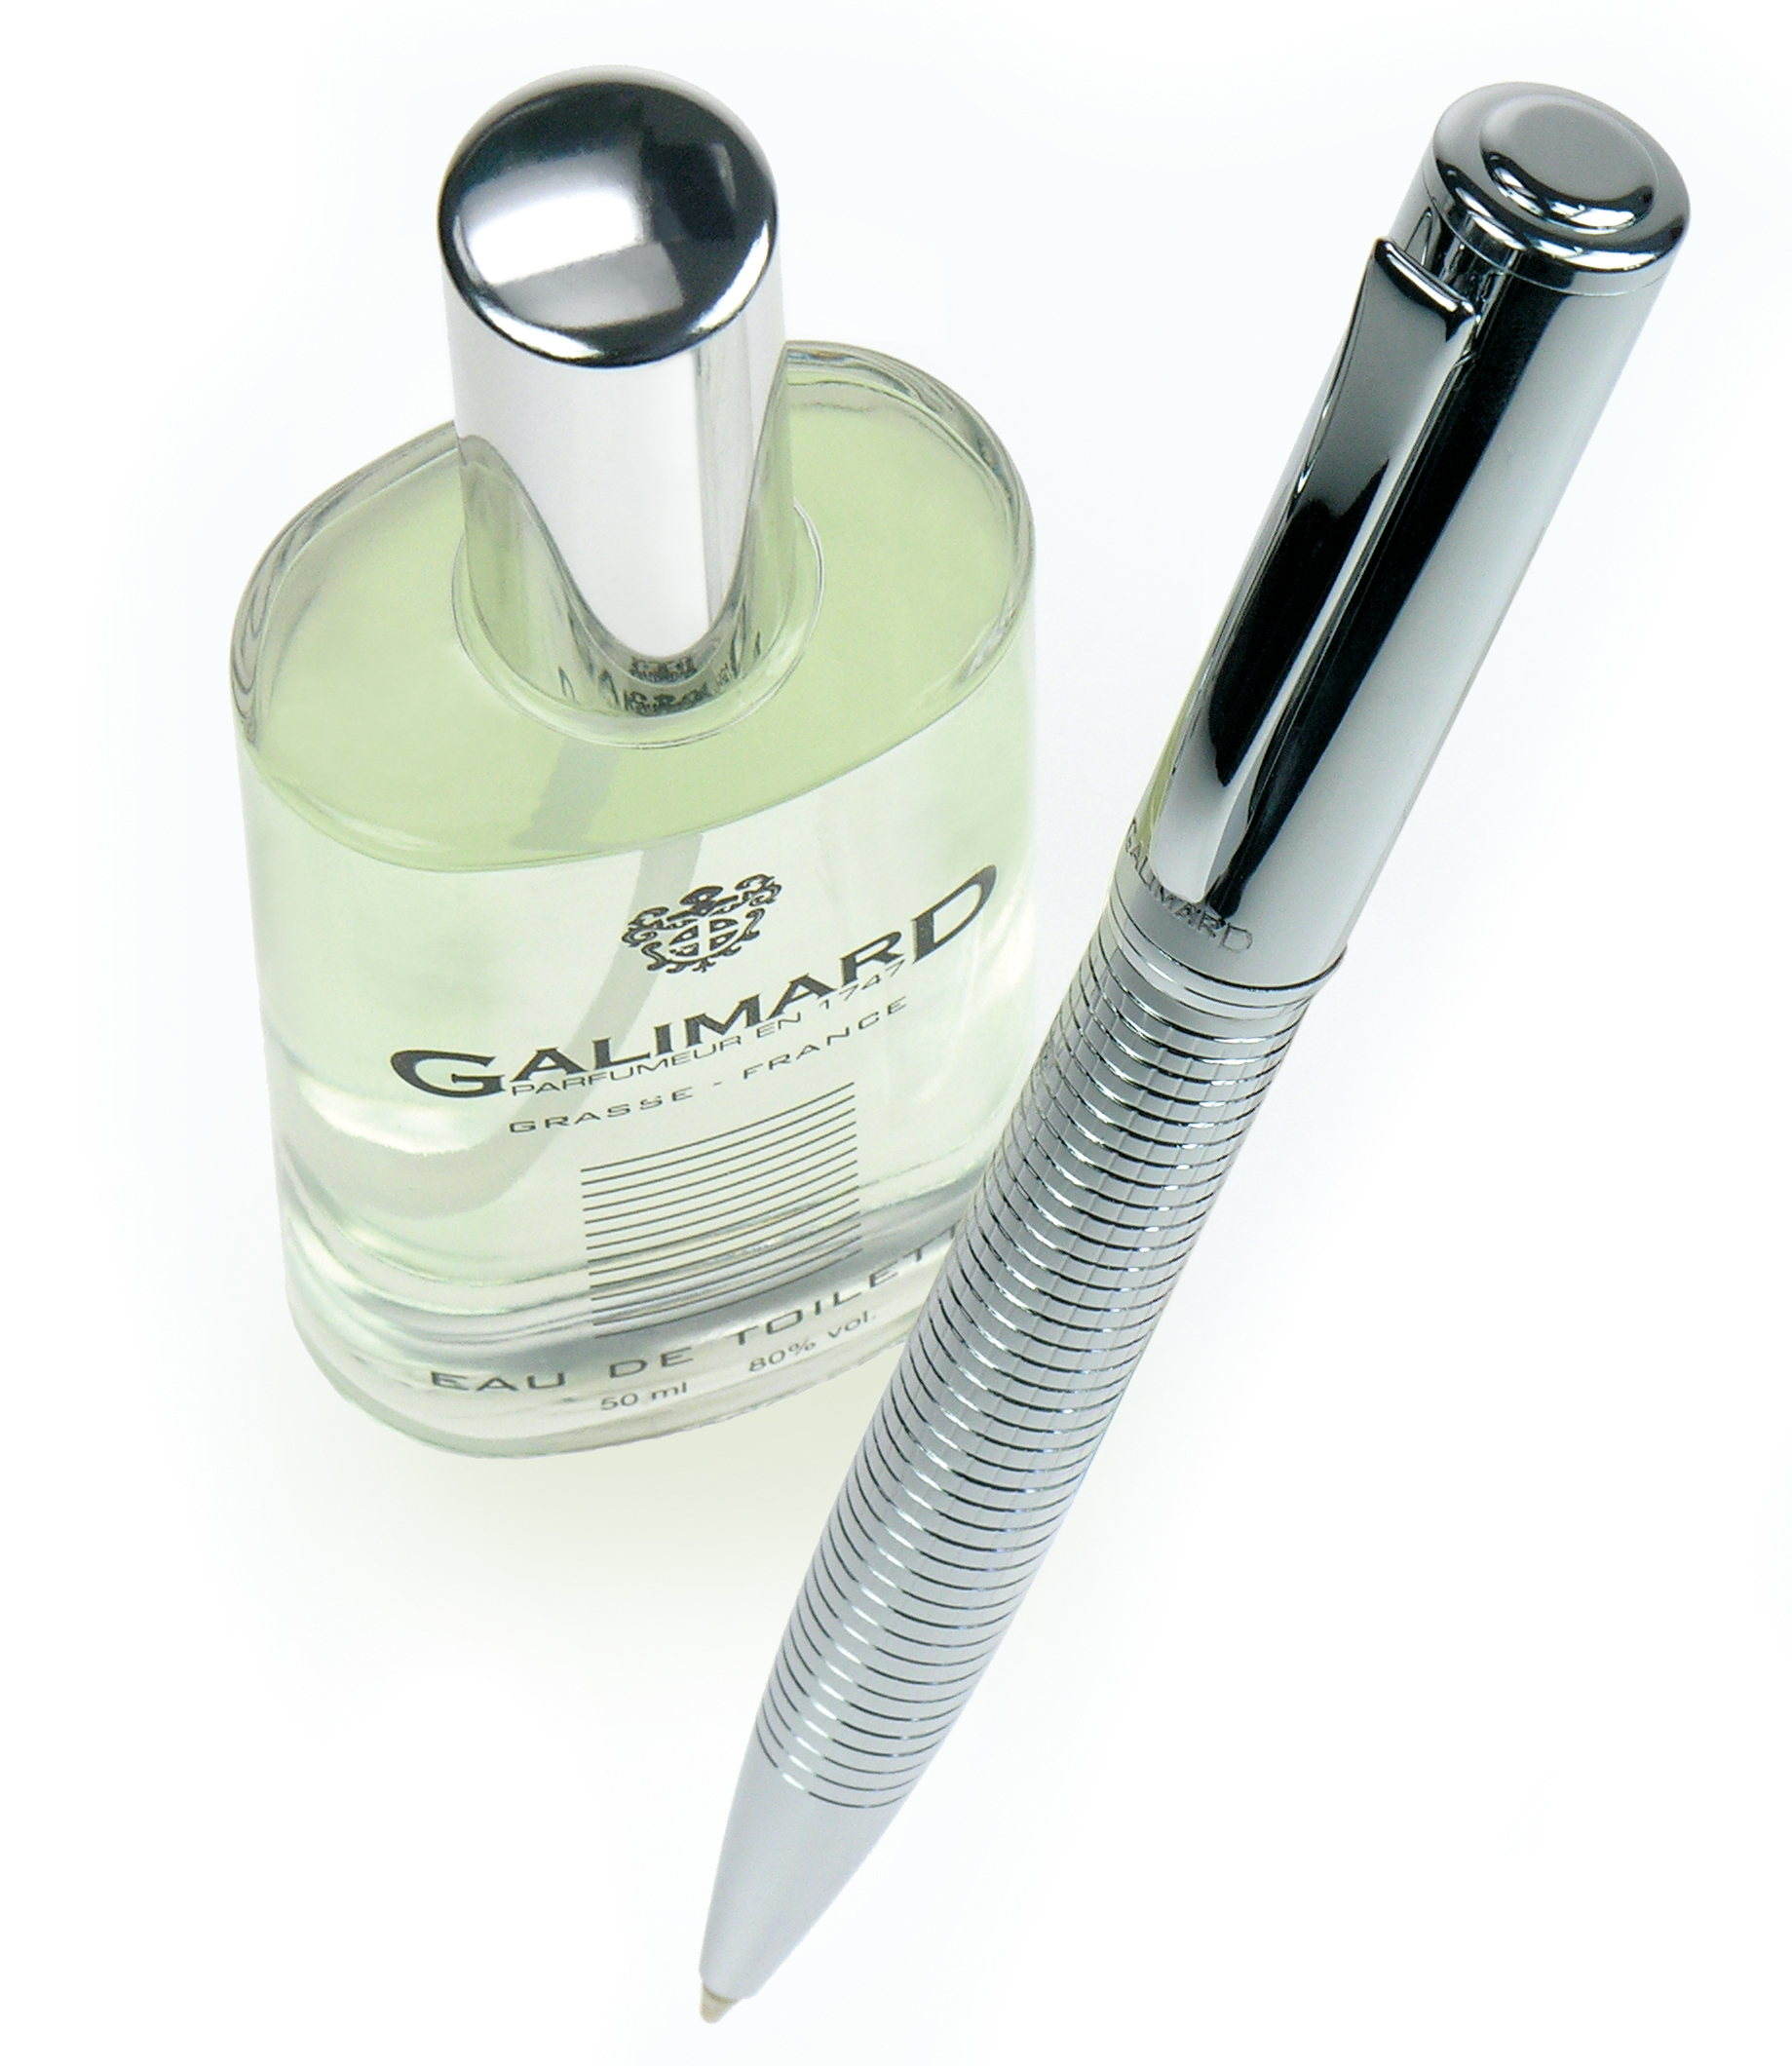 Vaporisateur vide - Galimard - Parfumeur à Grasse depuis 1747